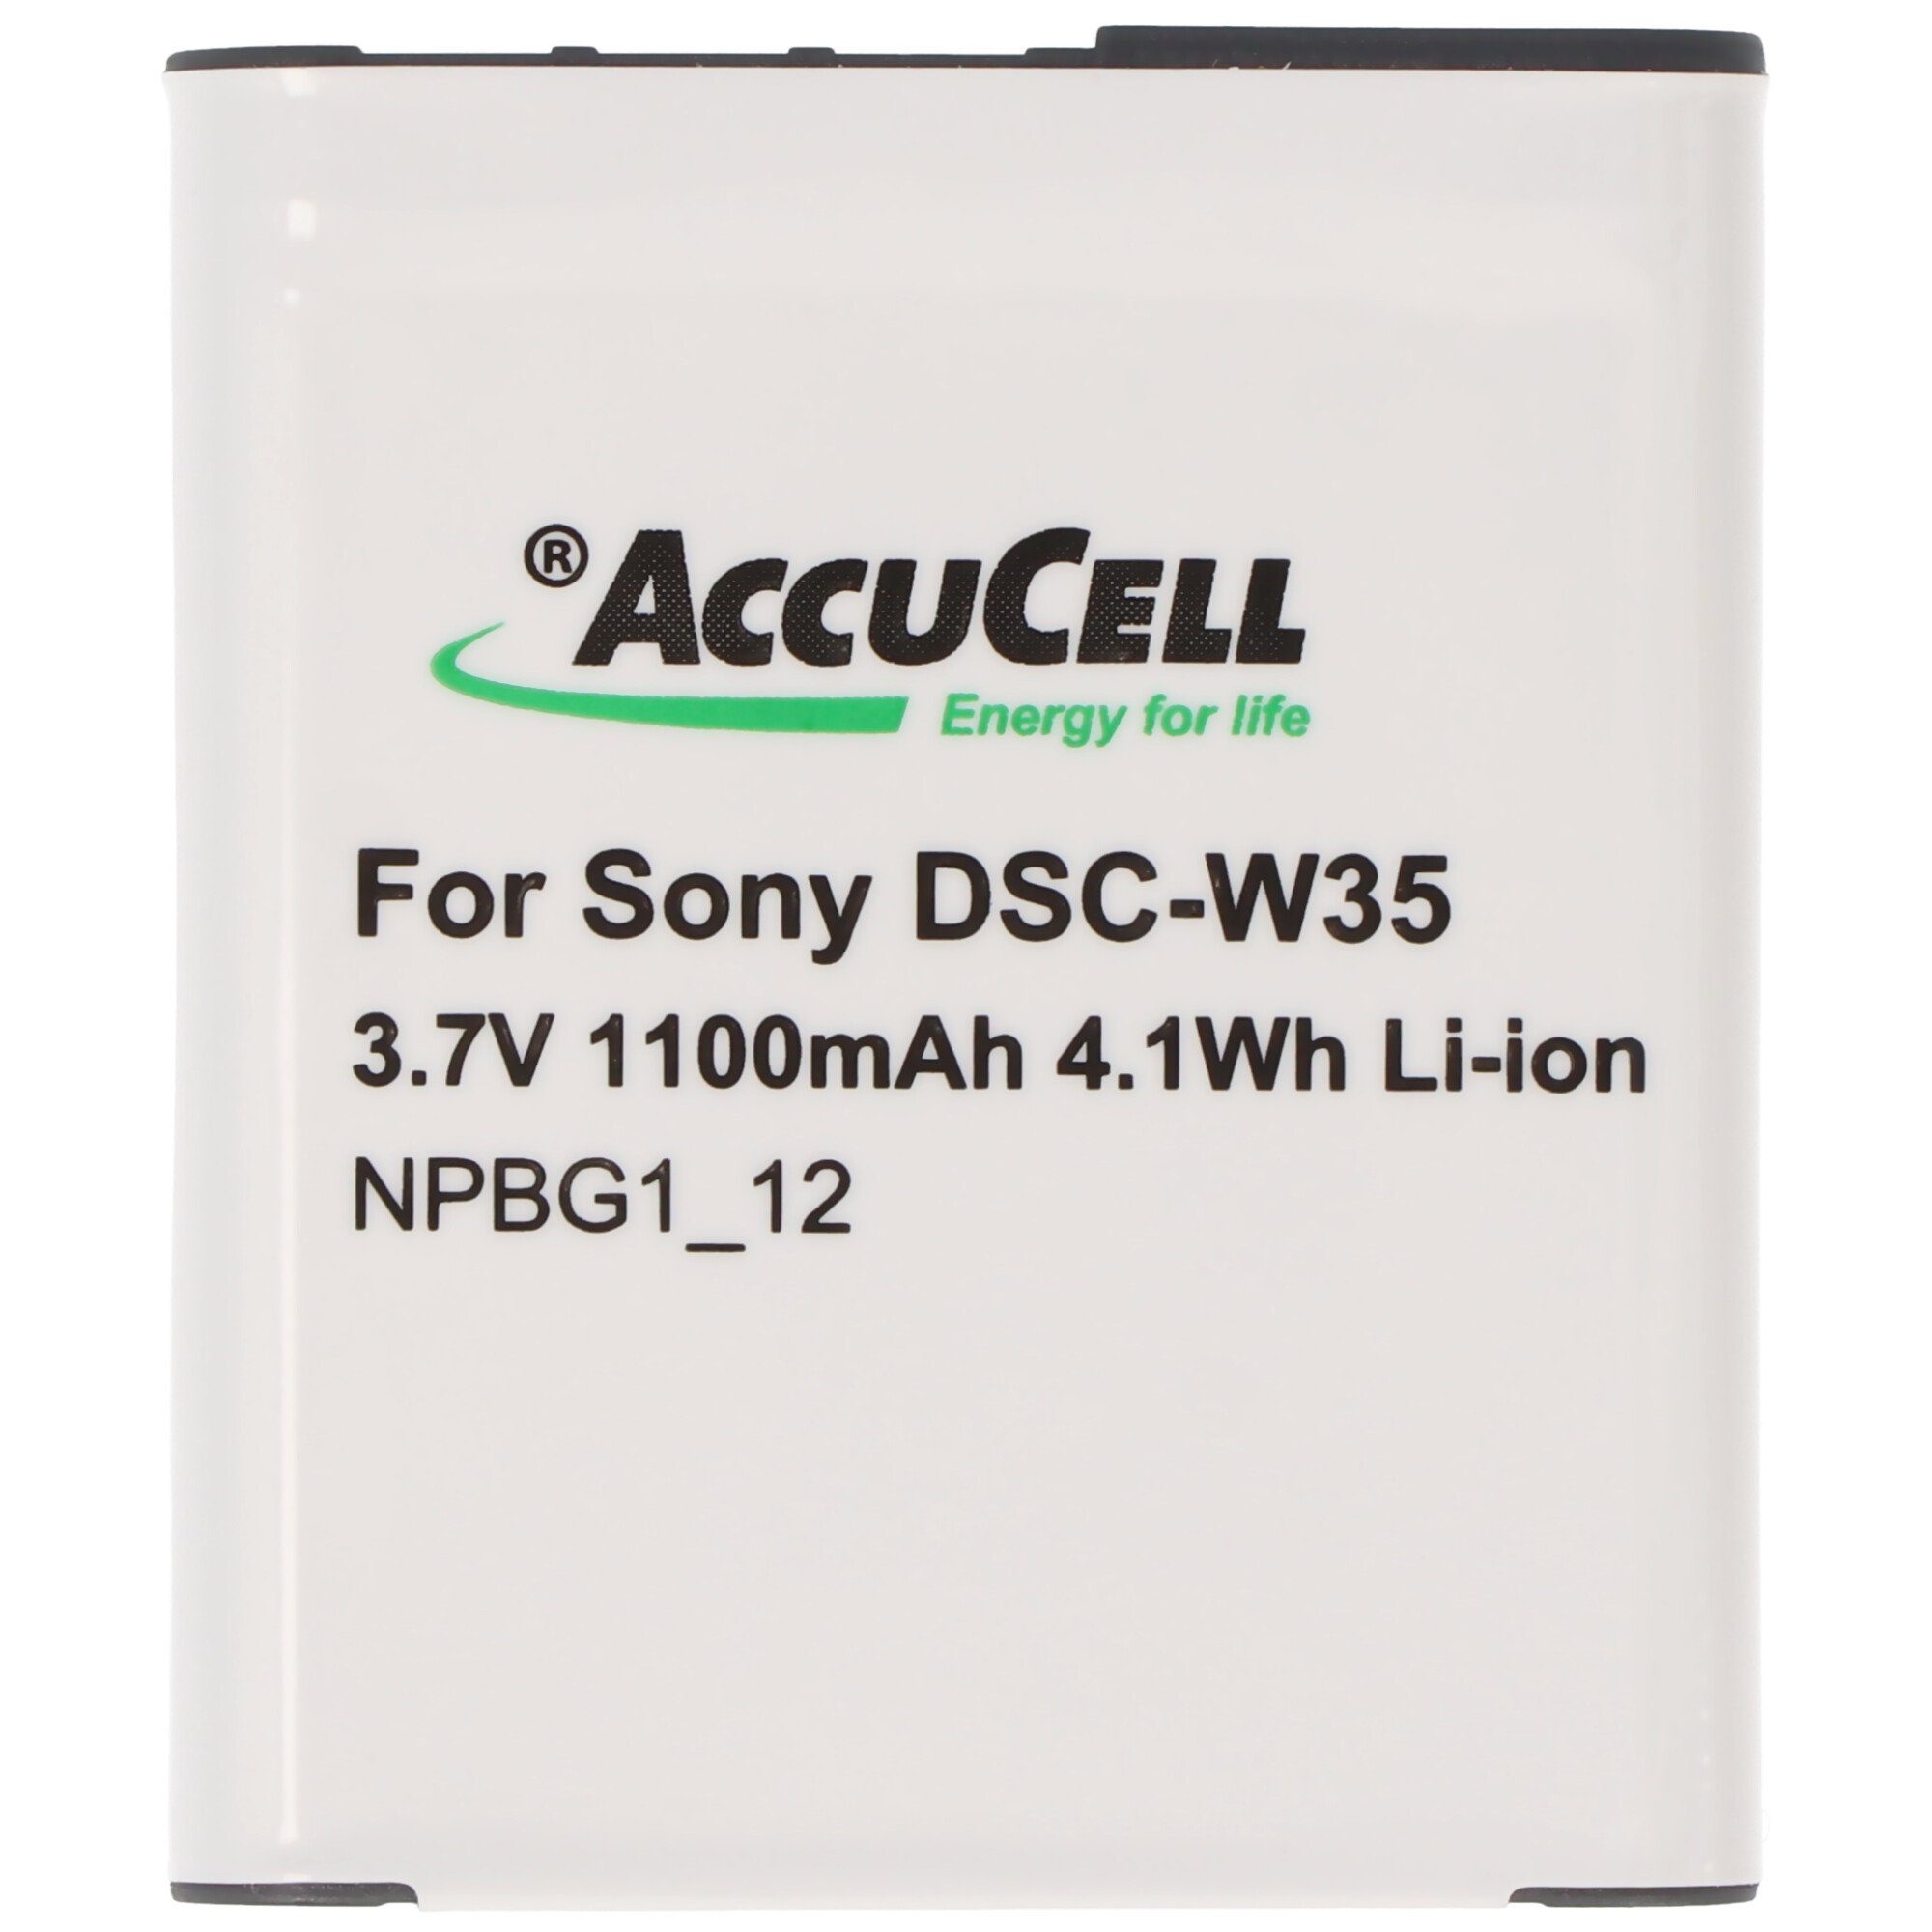 (3,6 passend für DSC-WX1, AccuCell CYBER-SHOT NP-BG1 Sony Akku V) mAh 950 Akku AccuCell DSC-W3 Akku